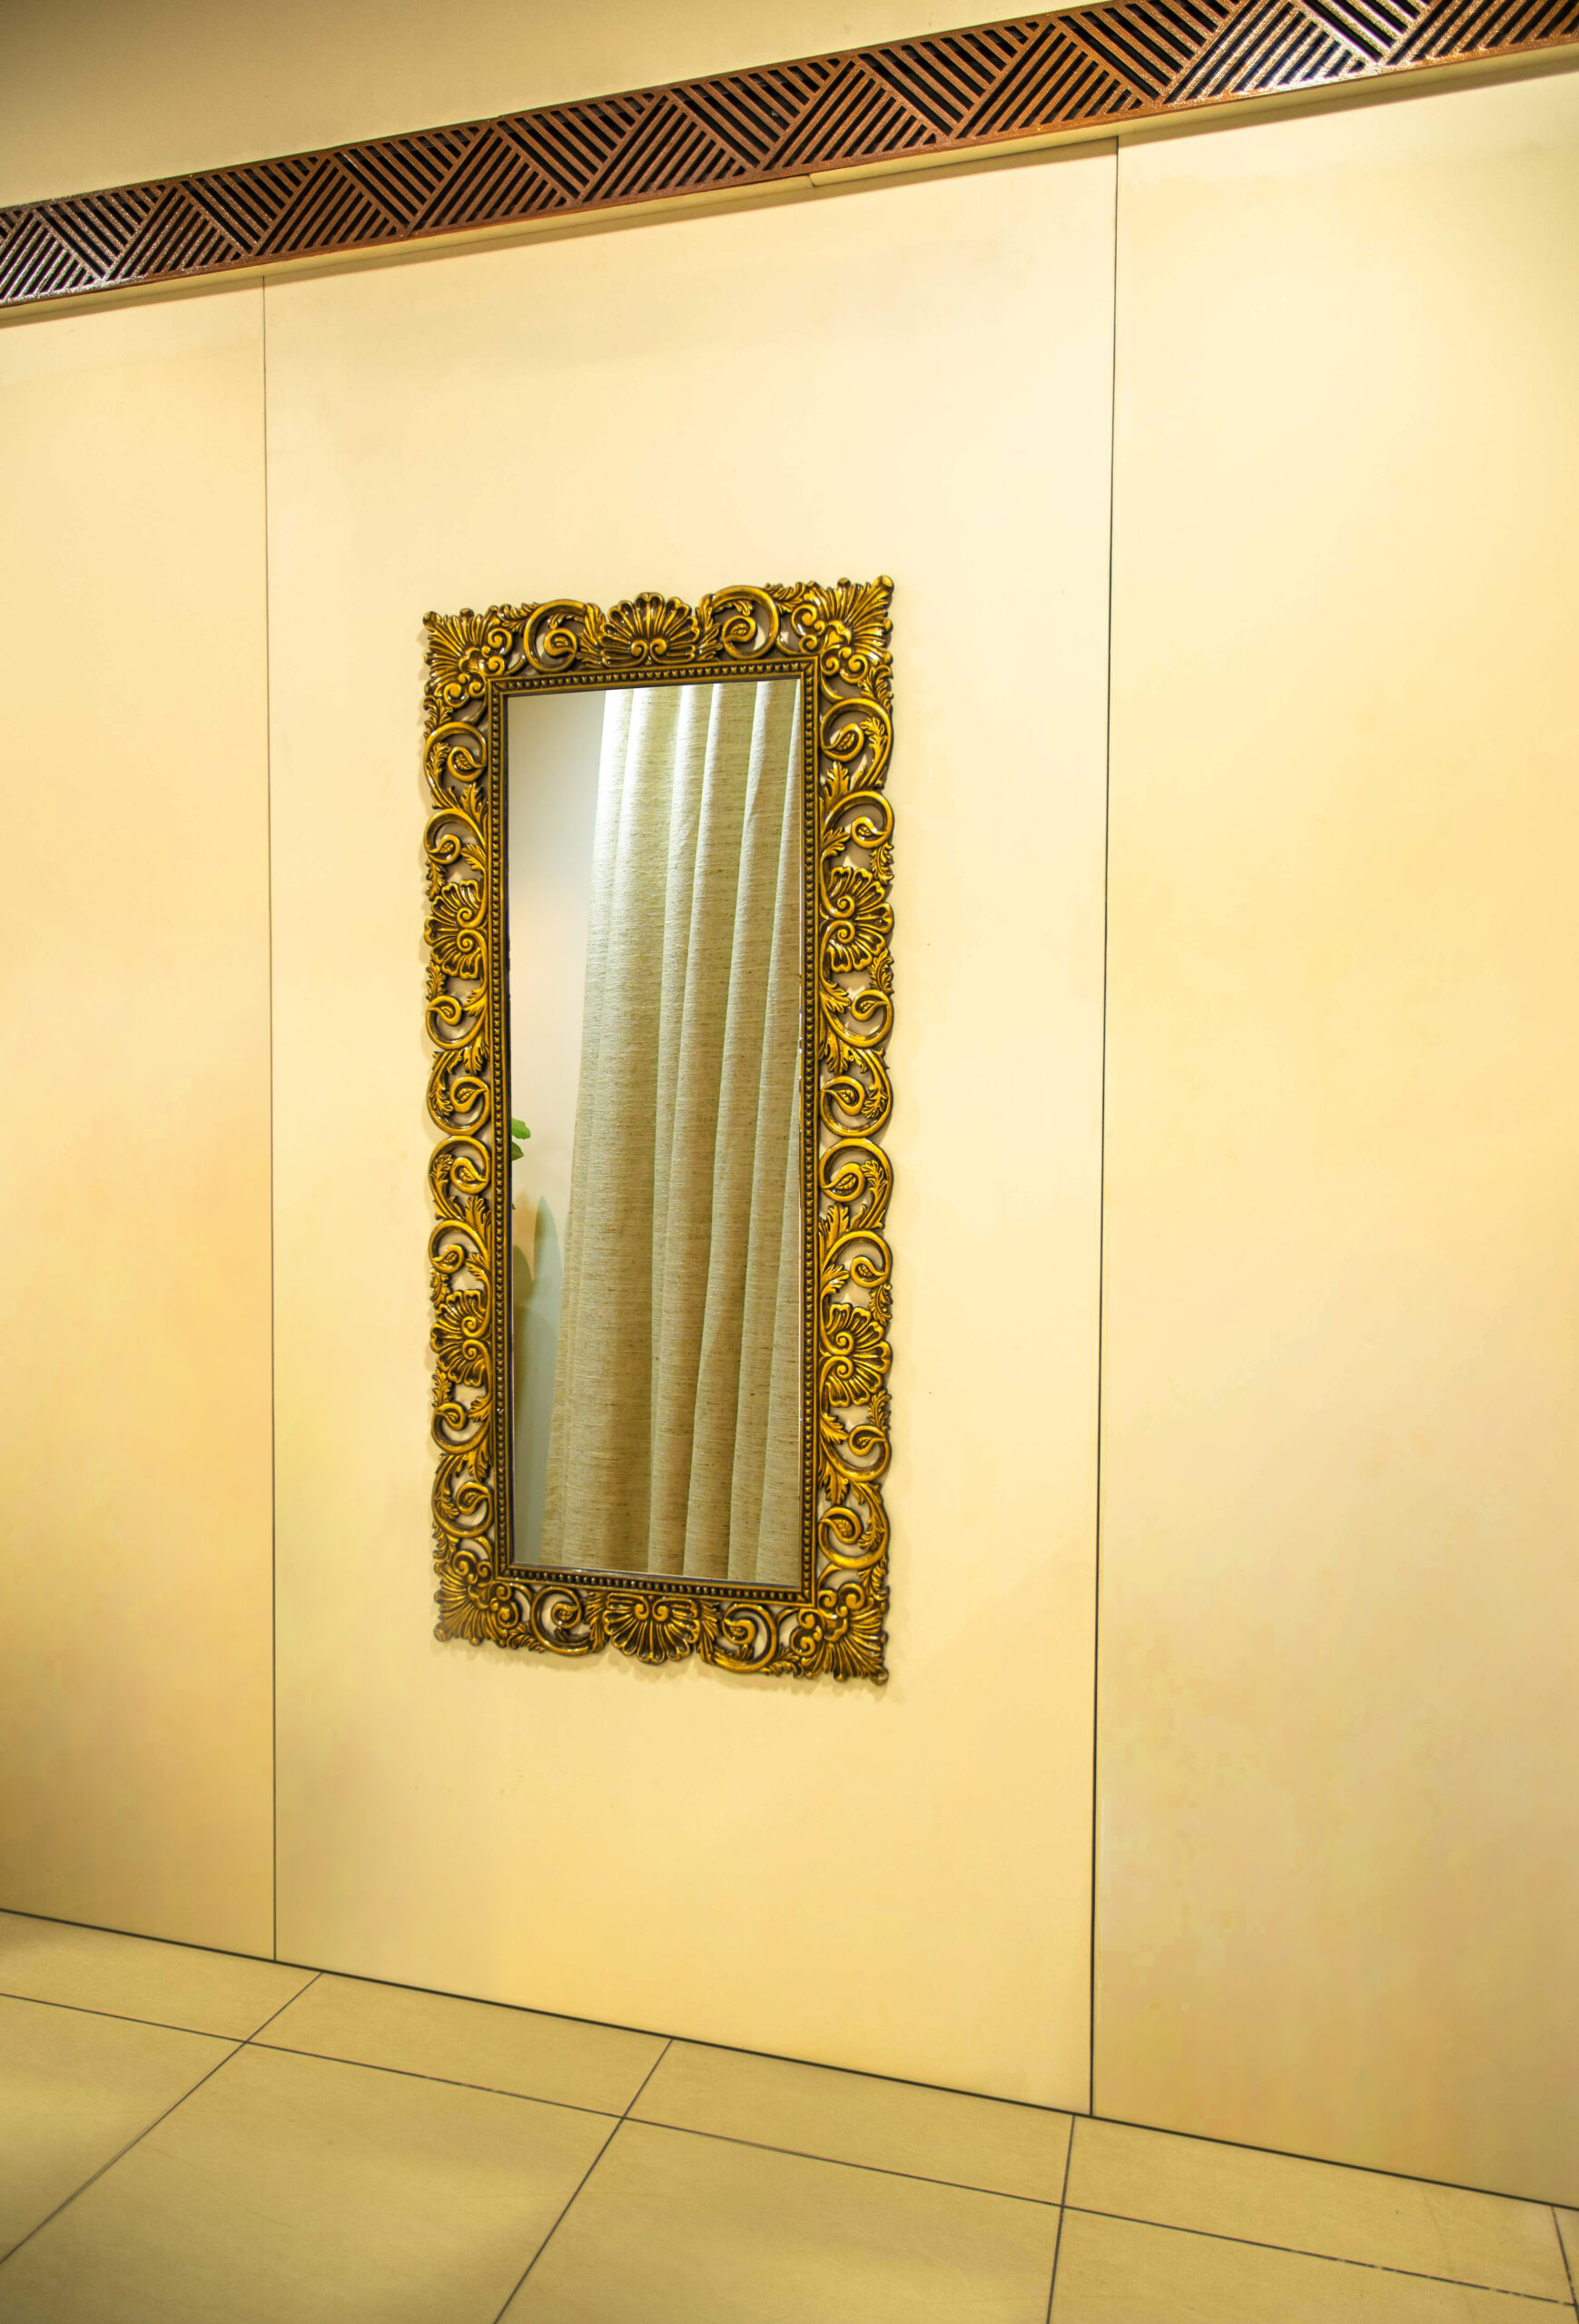 Brass Mirror Frame